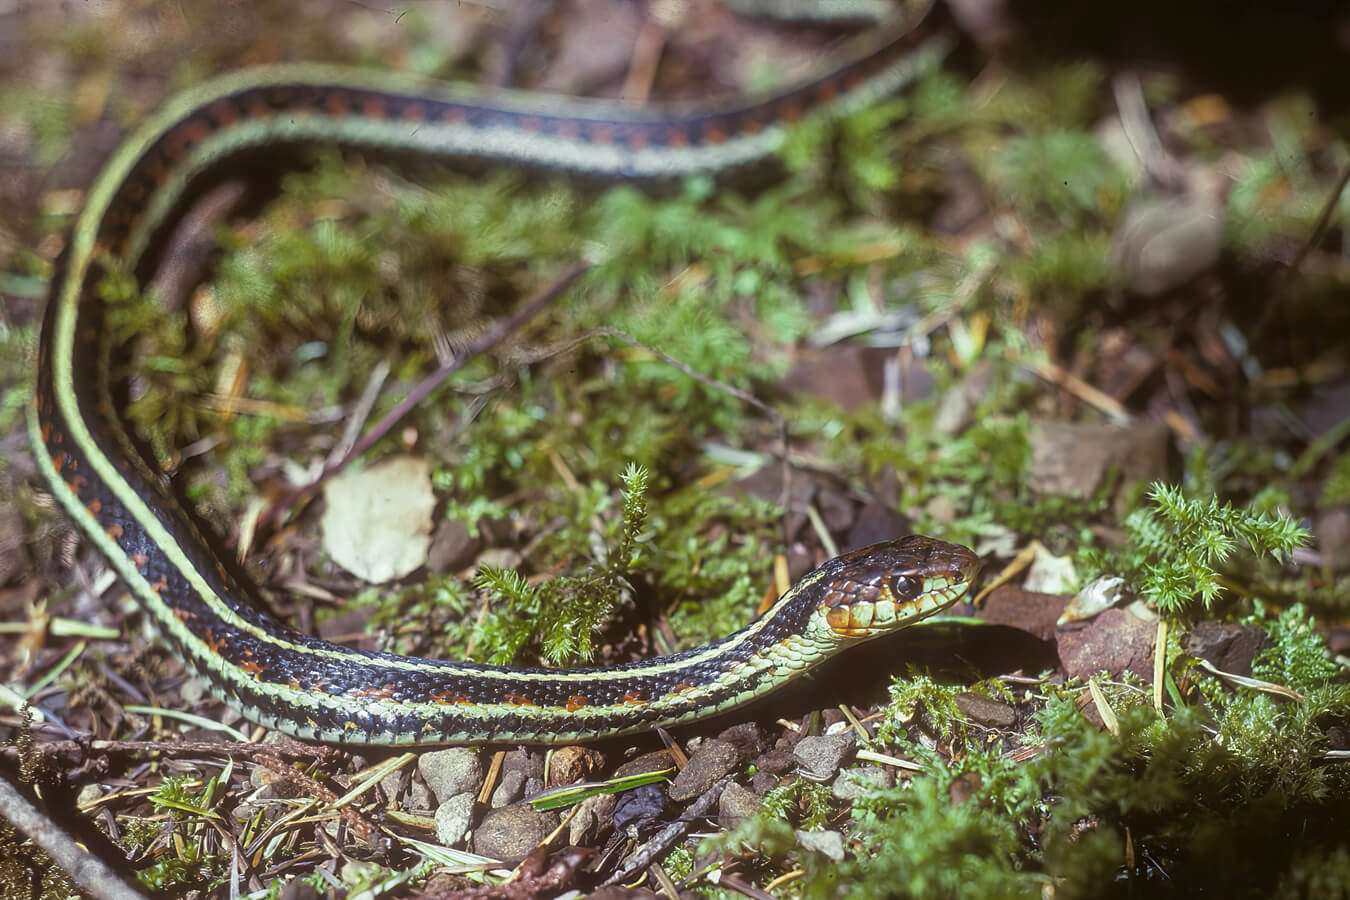 Garter Snake in the Grass, Olympic National Park, Washington | Photo Credit: Shutterstock / steve estvanik